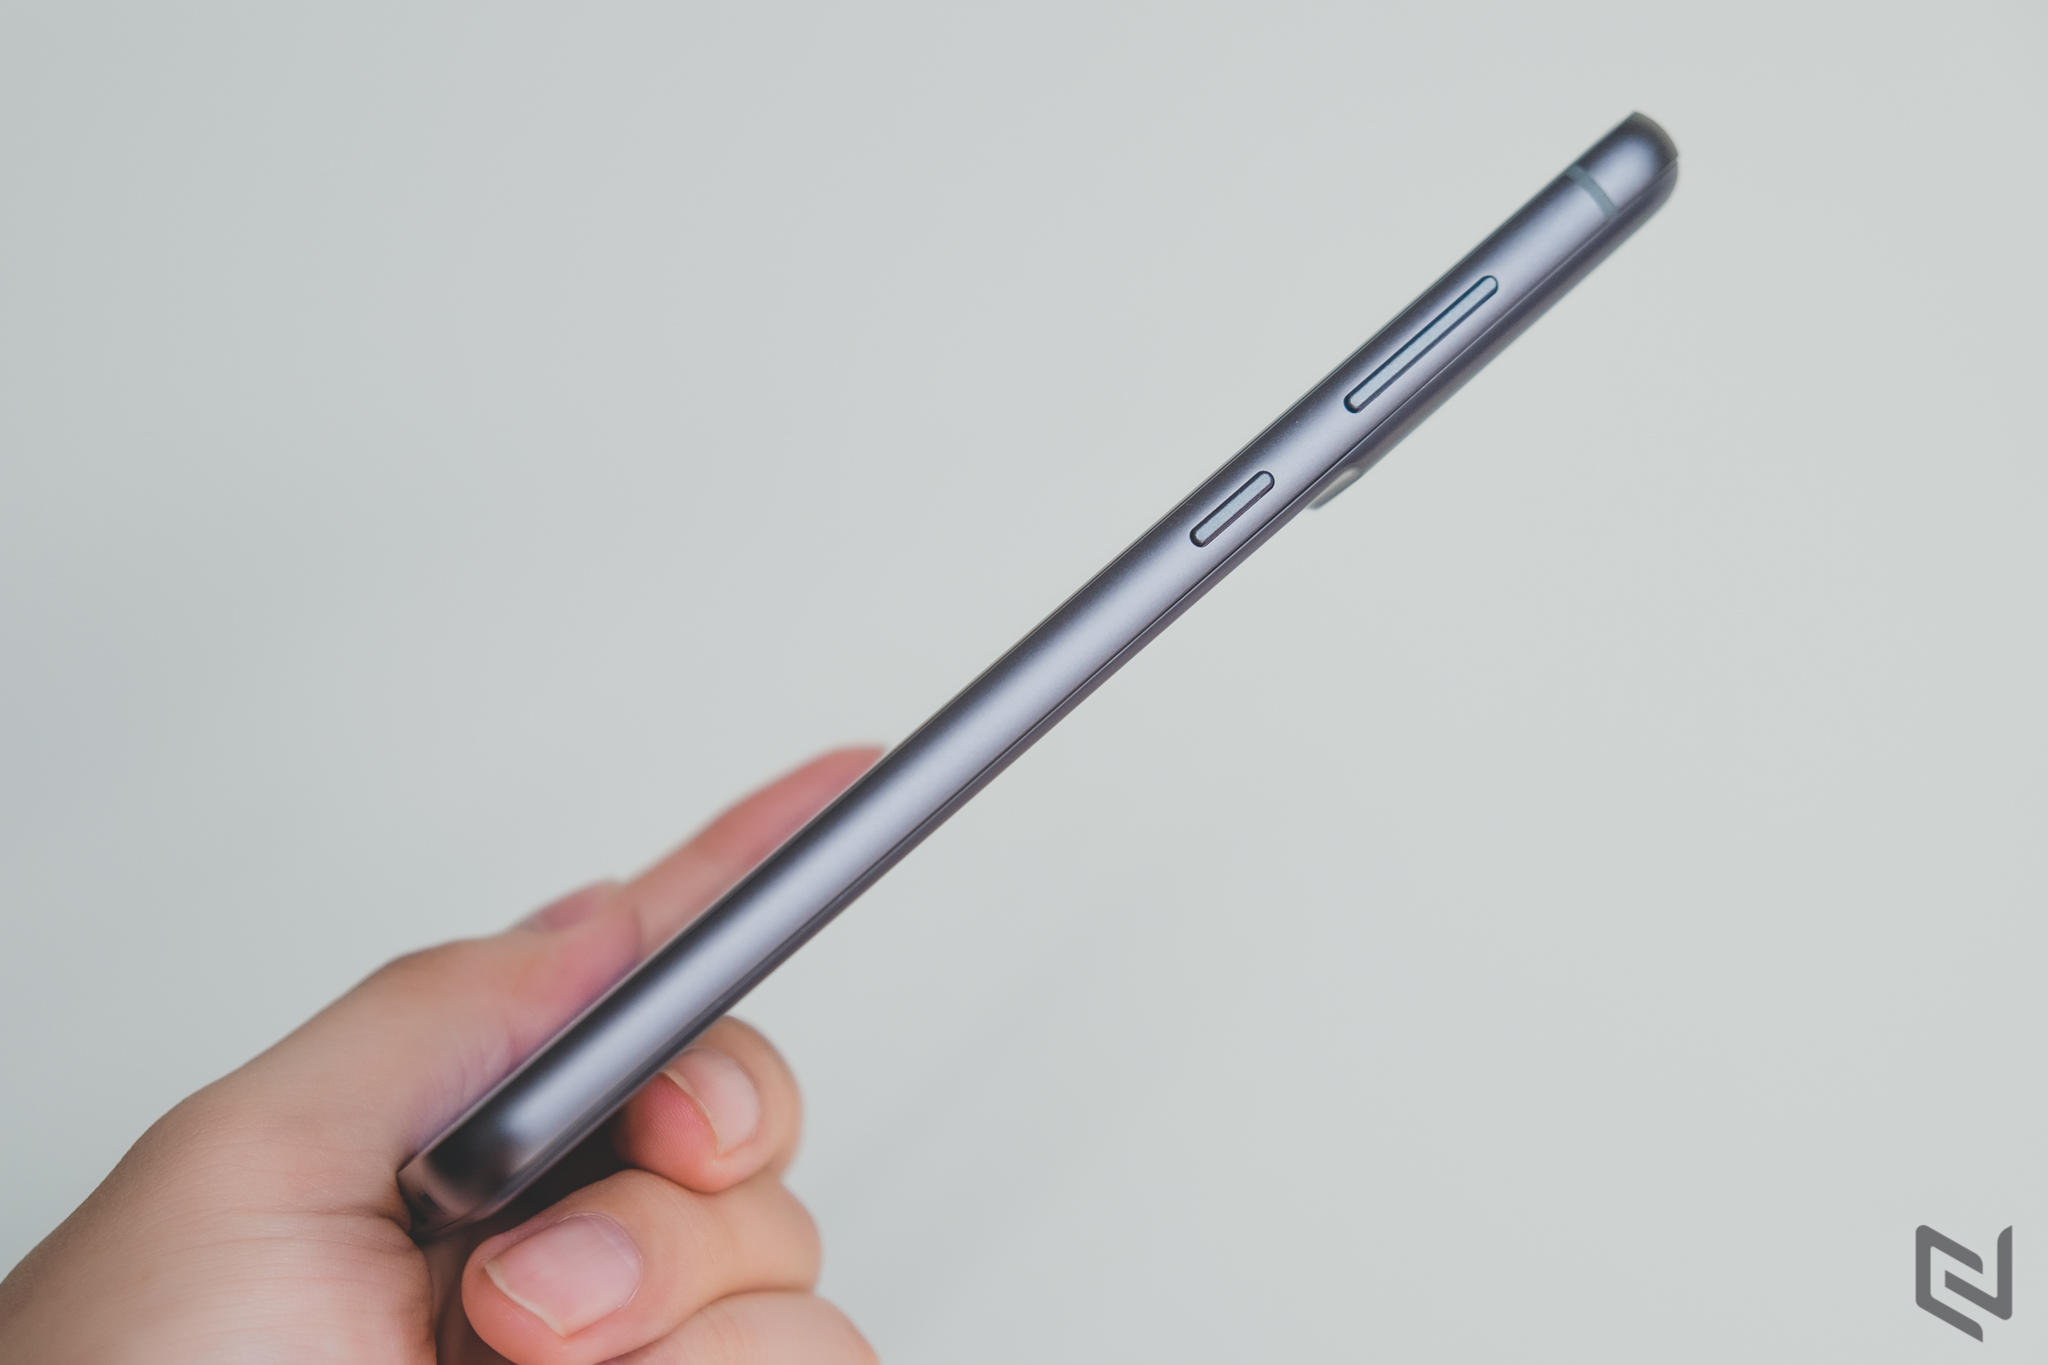 Mở hộp Samsung Galaxy S21 FE 5G: Smartphone dành cho fan với loạt tính năng cao cấp